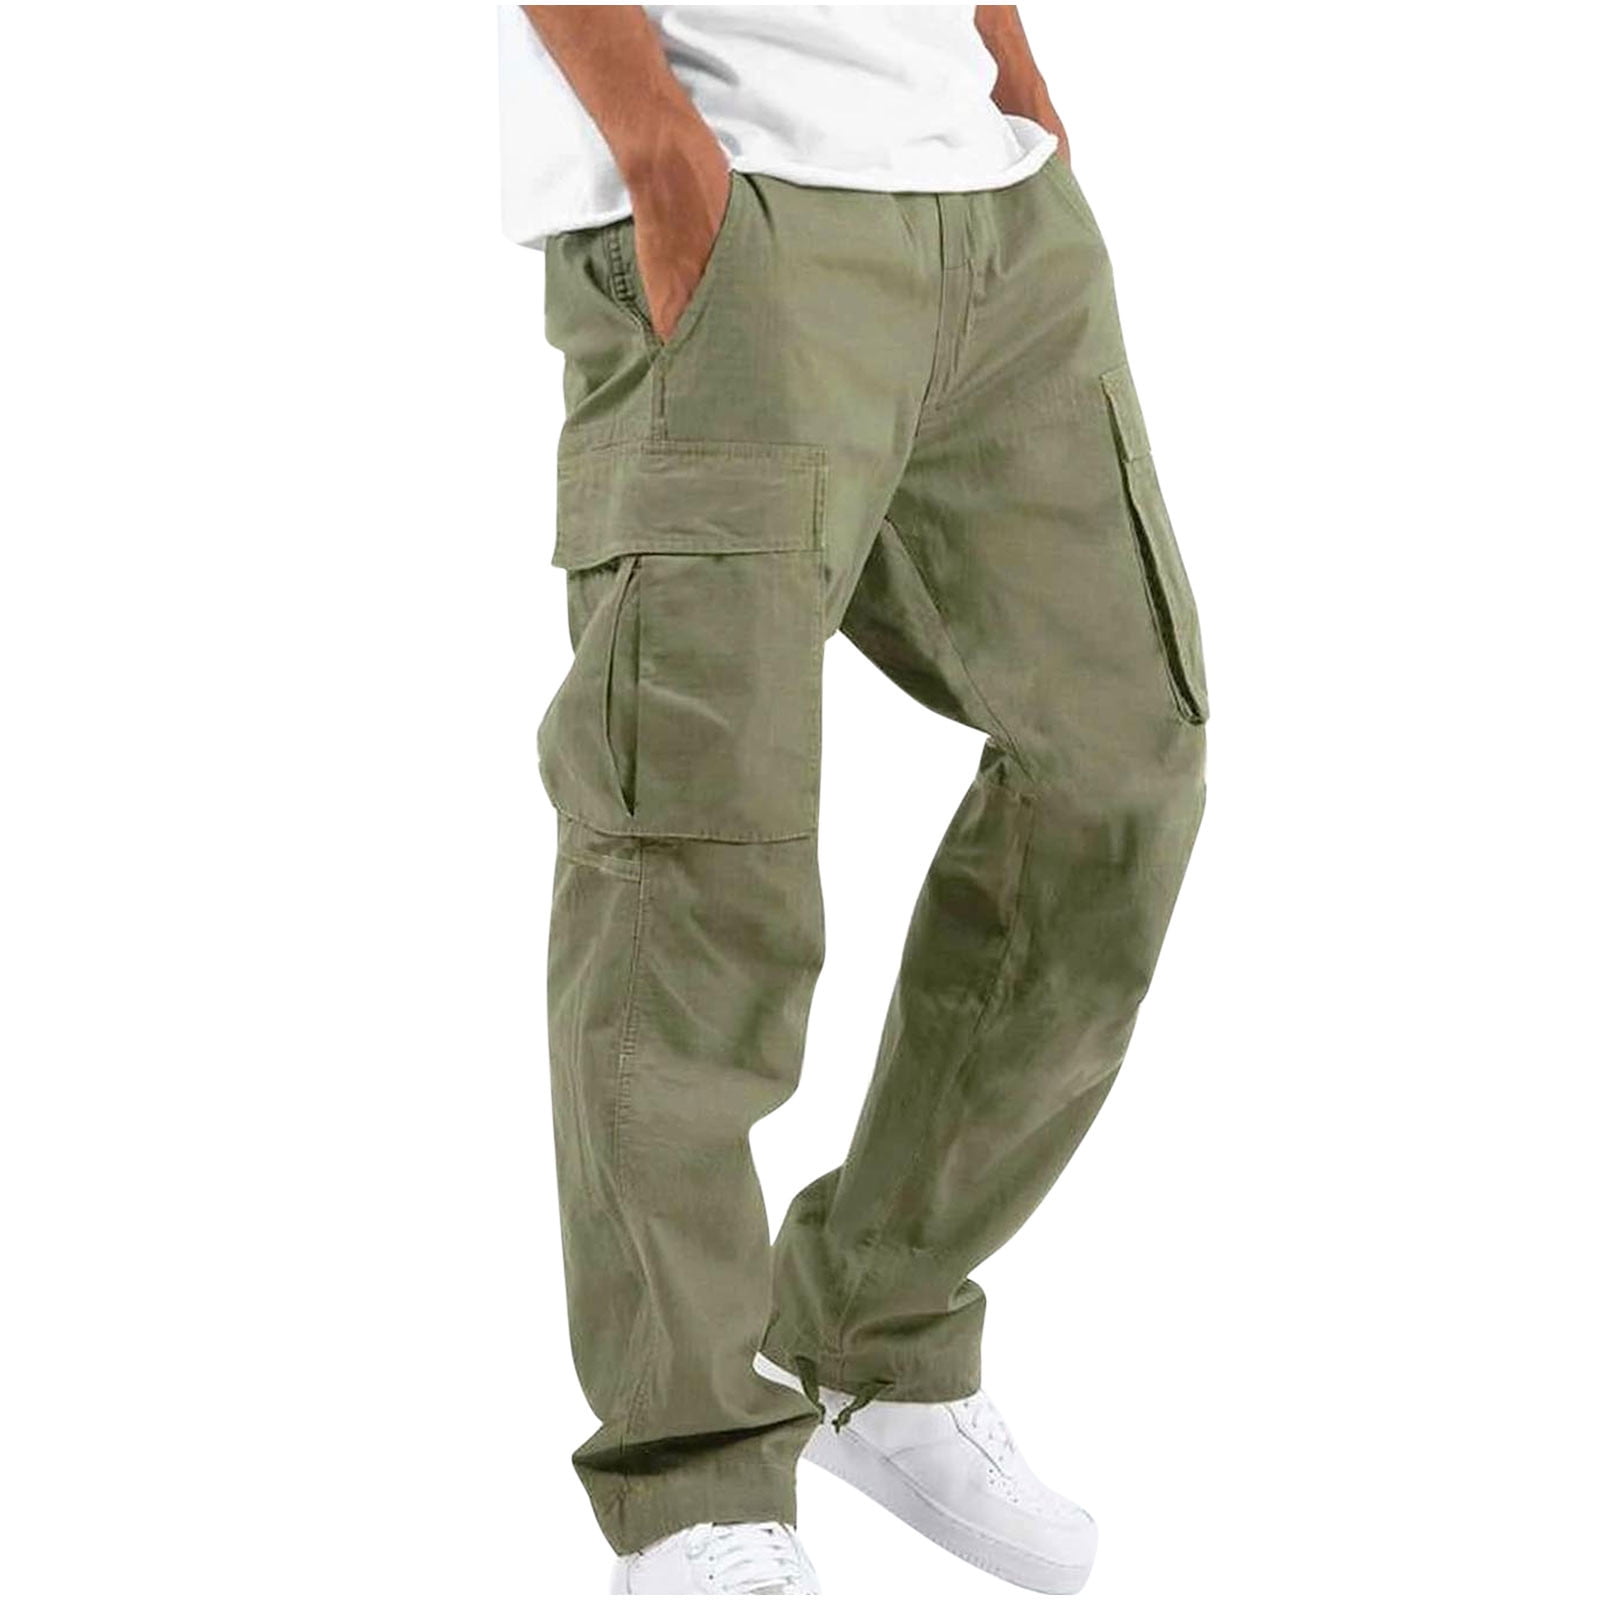 Beige Hipster Pants Mens Boho Pants Sand Colour Artesano Pants Cargo Sweat  Pants Casual Minimalist Pants Soft Cotton Trousers Men - Etsy